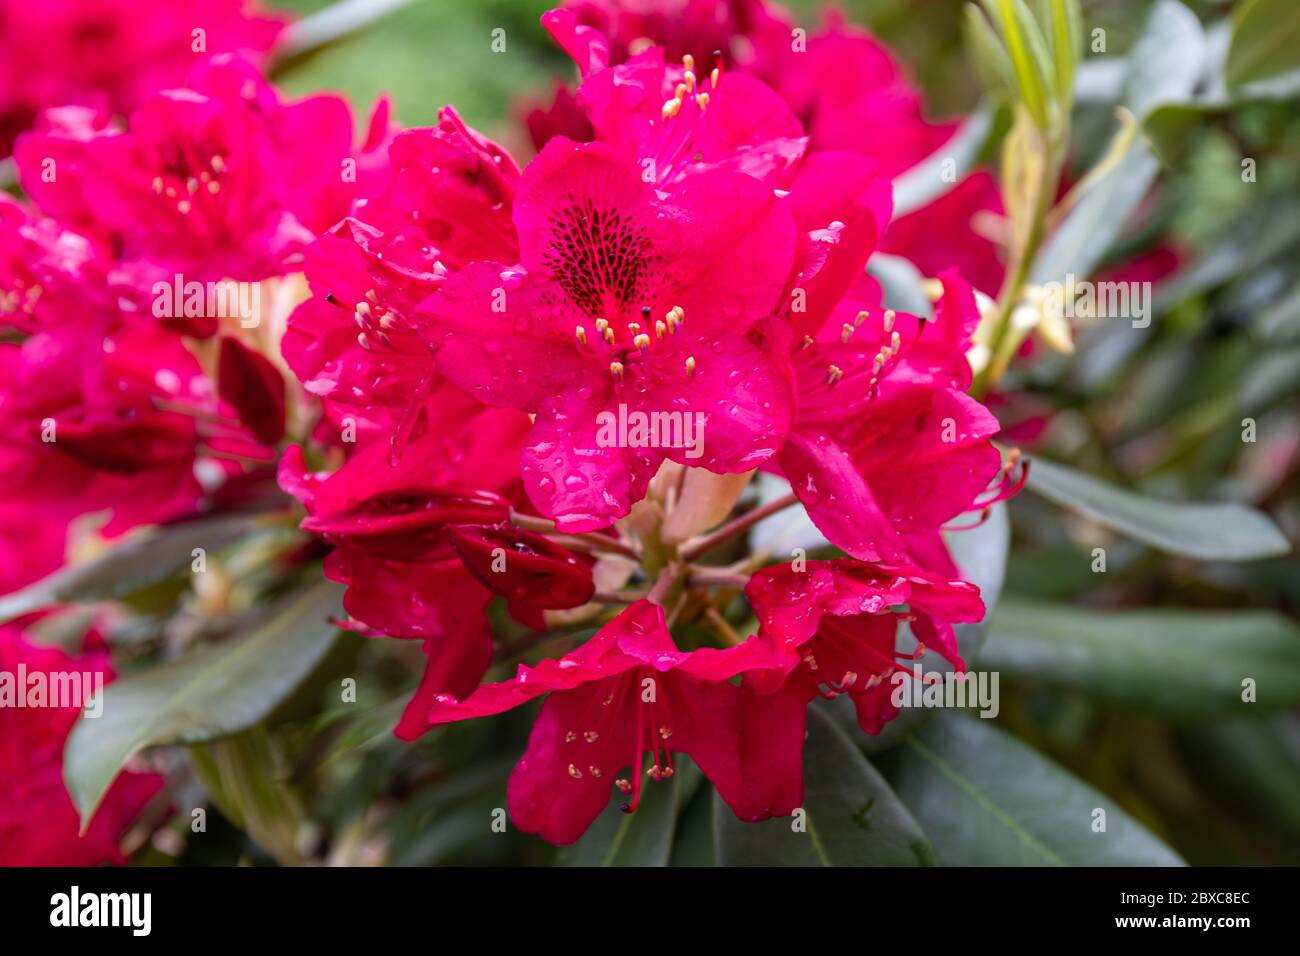 Flores de Rhododendron catawbiense también conocidas como Catawba rosebay, Catawba rododendron, rosebay de montaña, hiedra púrpura, laurel púrpura o laurel rojo Foto de stock